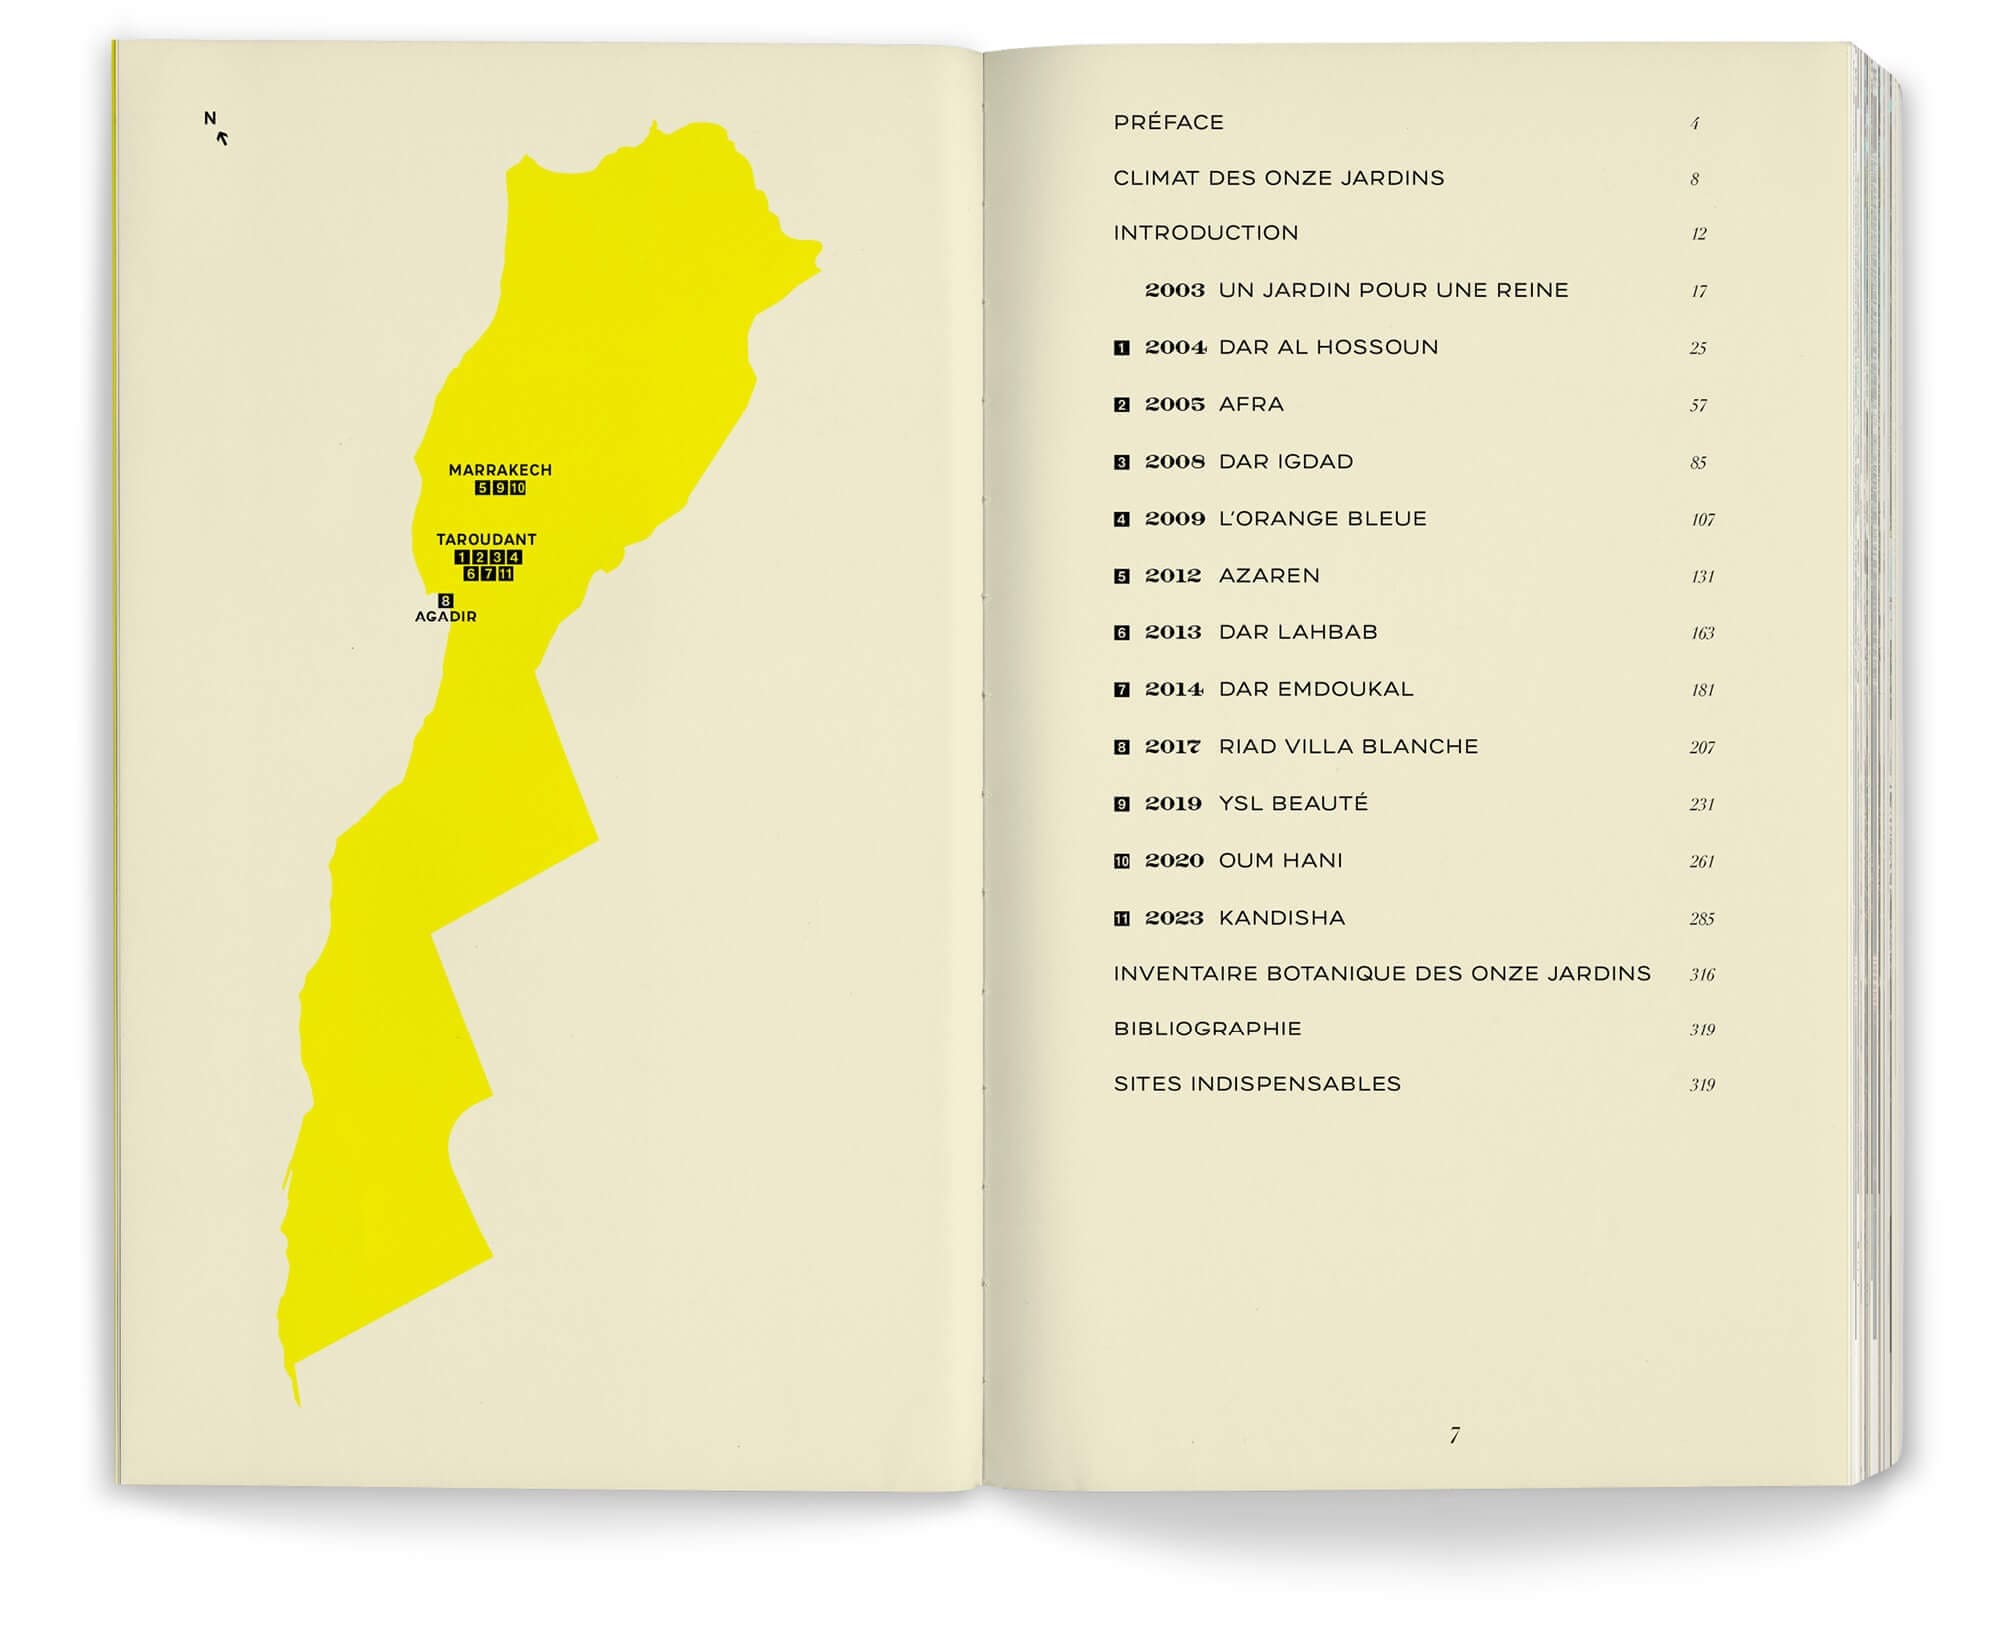 La carte du Maroc et la page sommaire du livre Onze jardins d'aridité par les paysagistes Ossart + Maurières, design IchetKar